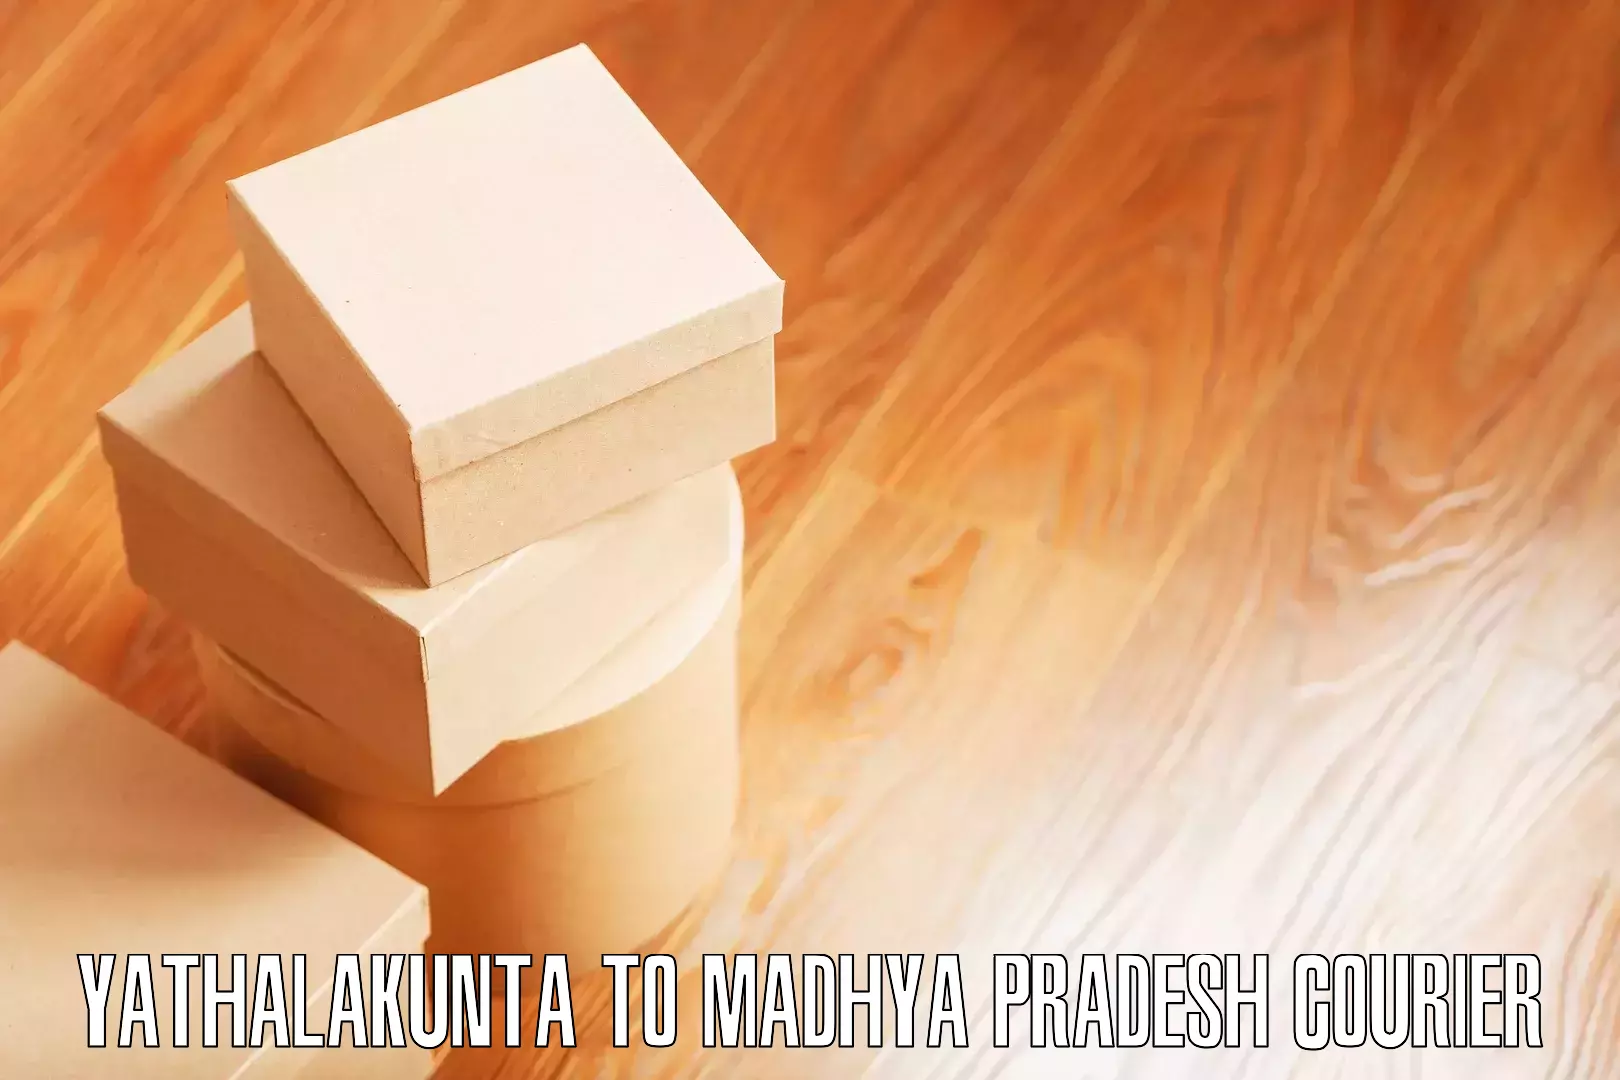 Seamless moving process Yathalakunta to Manawar